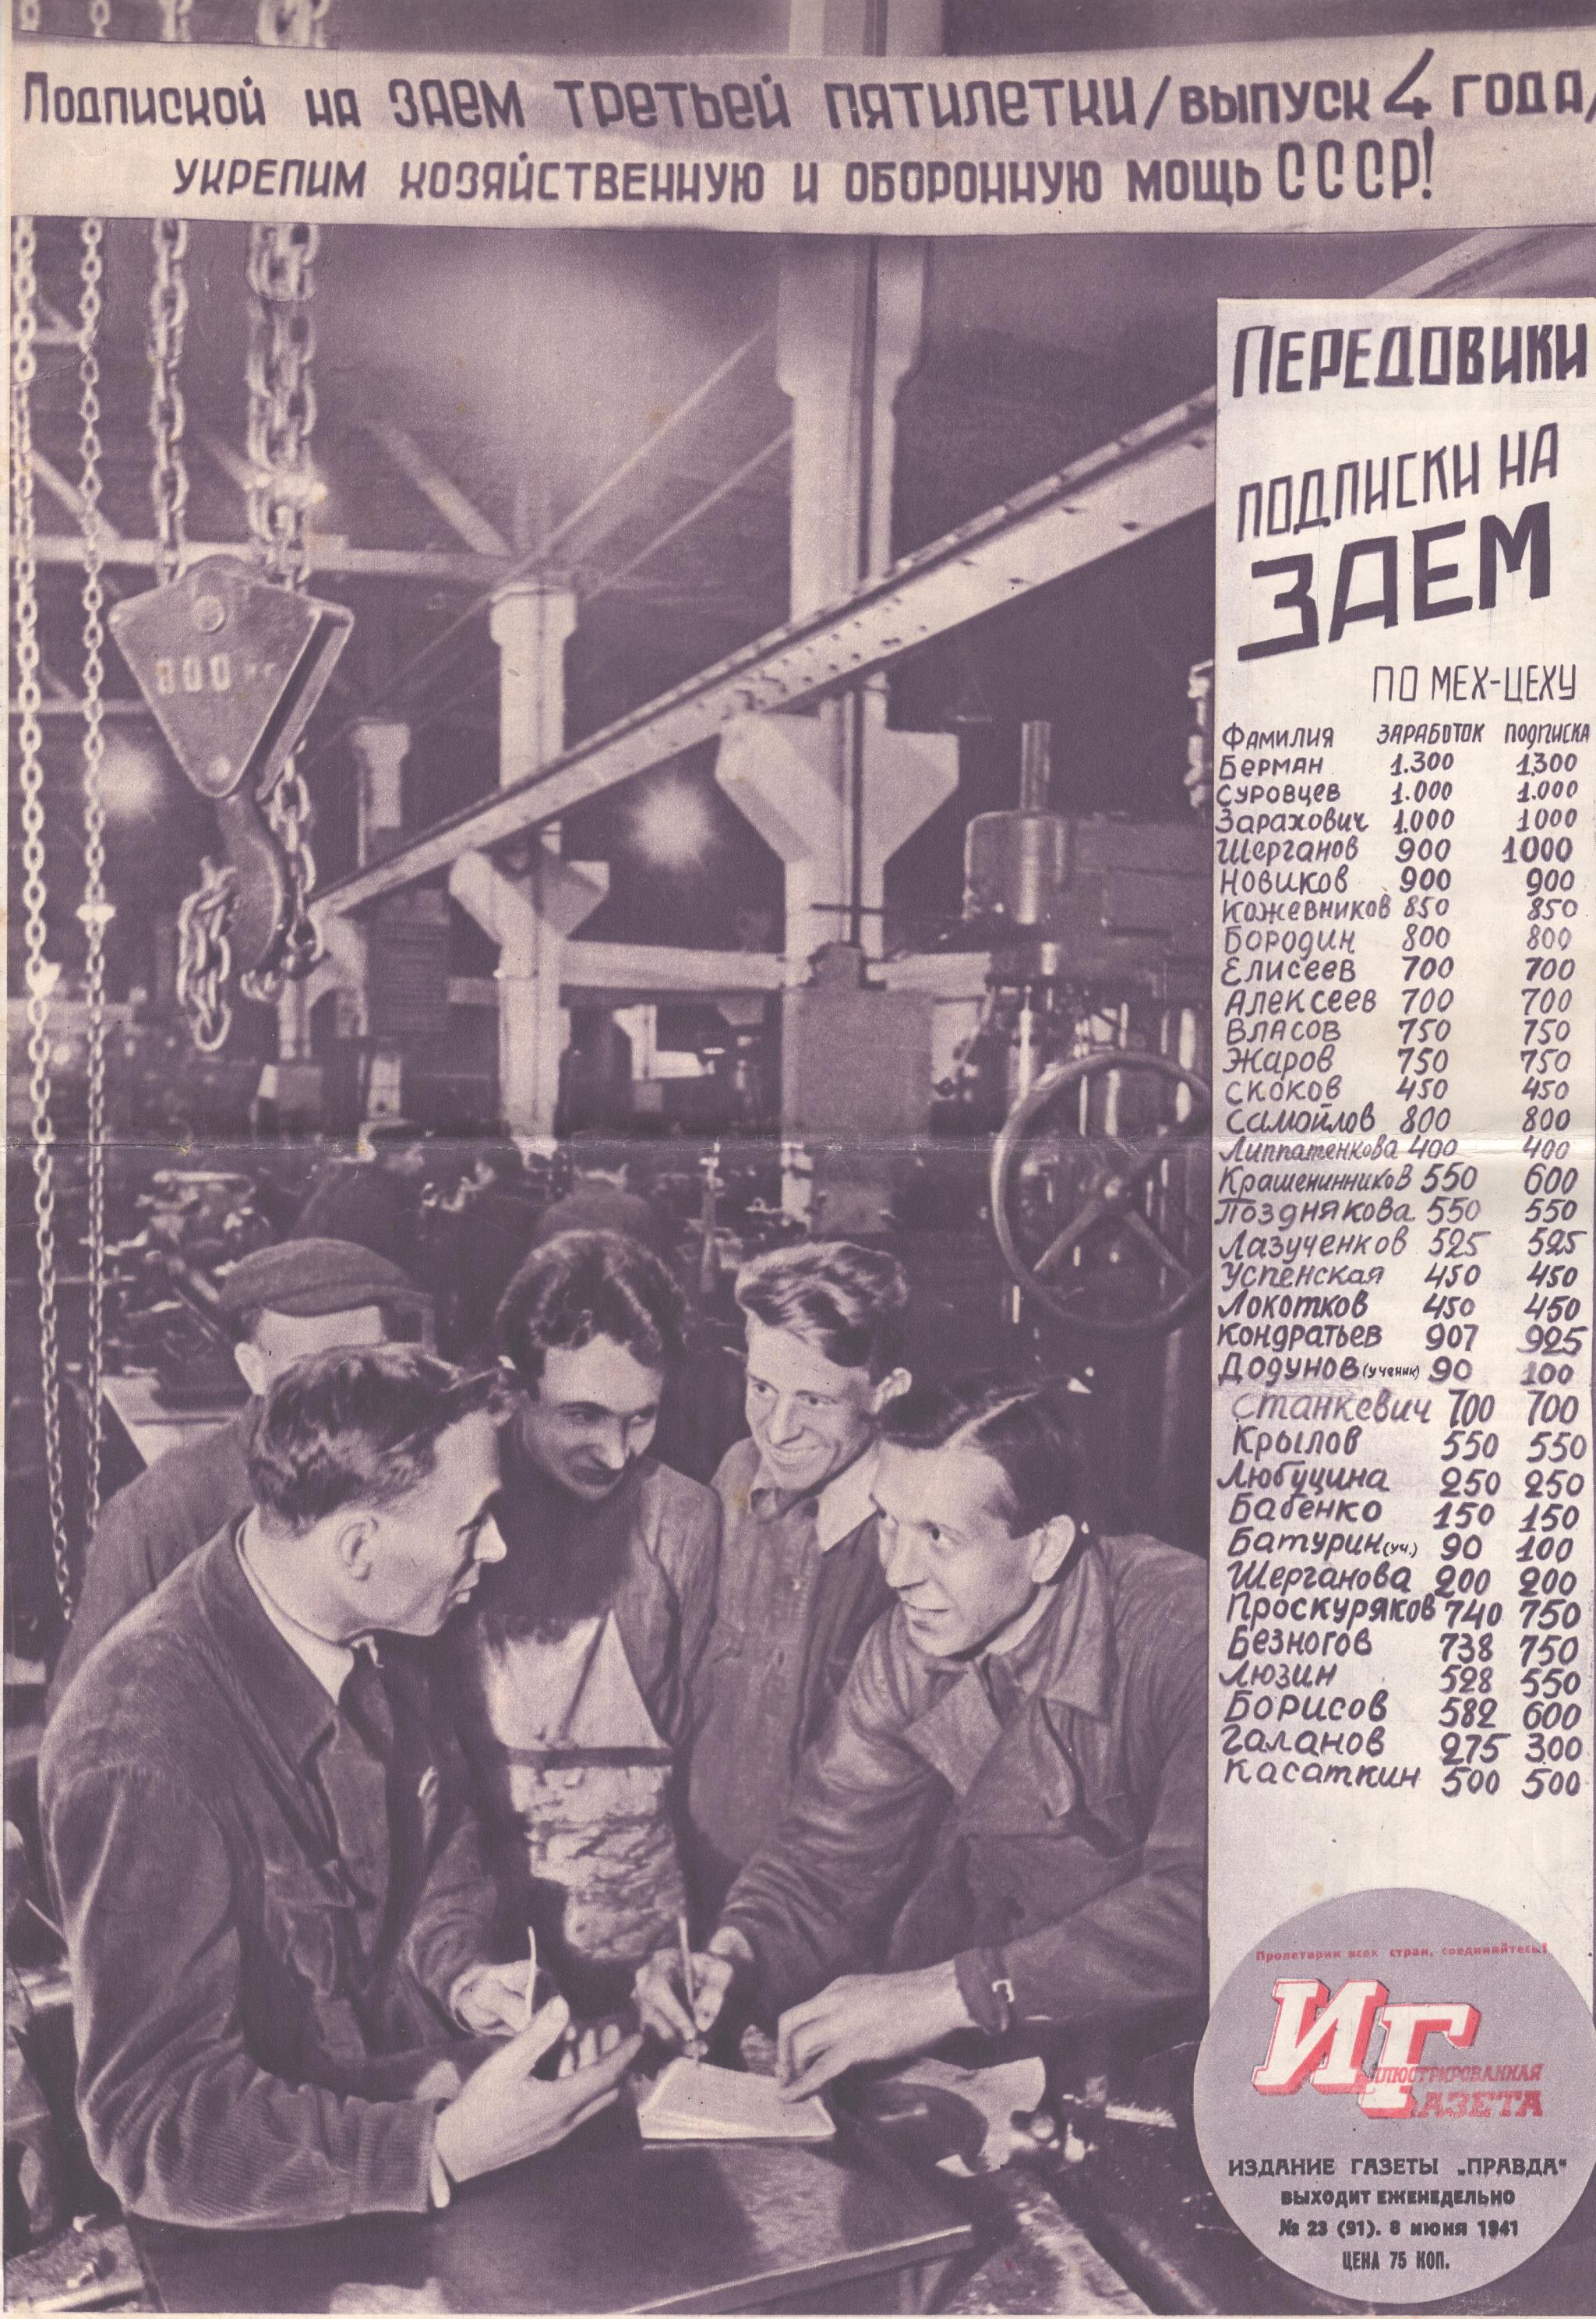 	Журнал "Красноармейская иллюстрированная газета". № 23 (червень). 1941